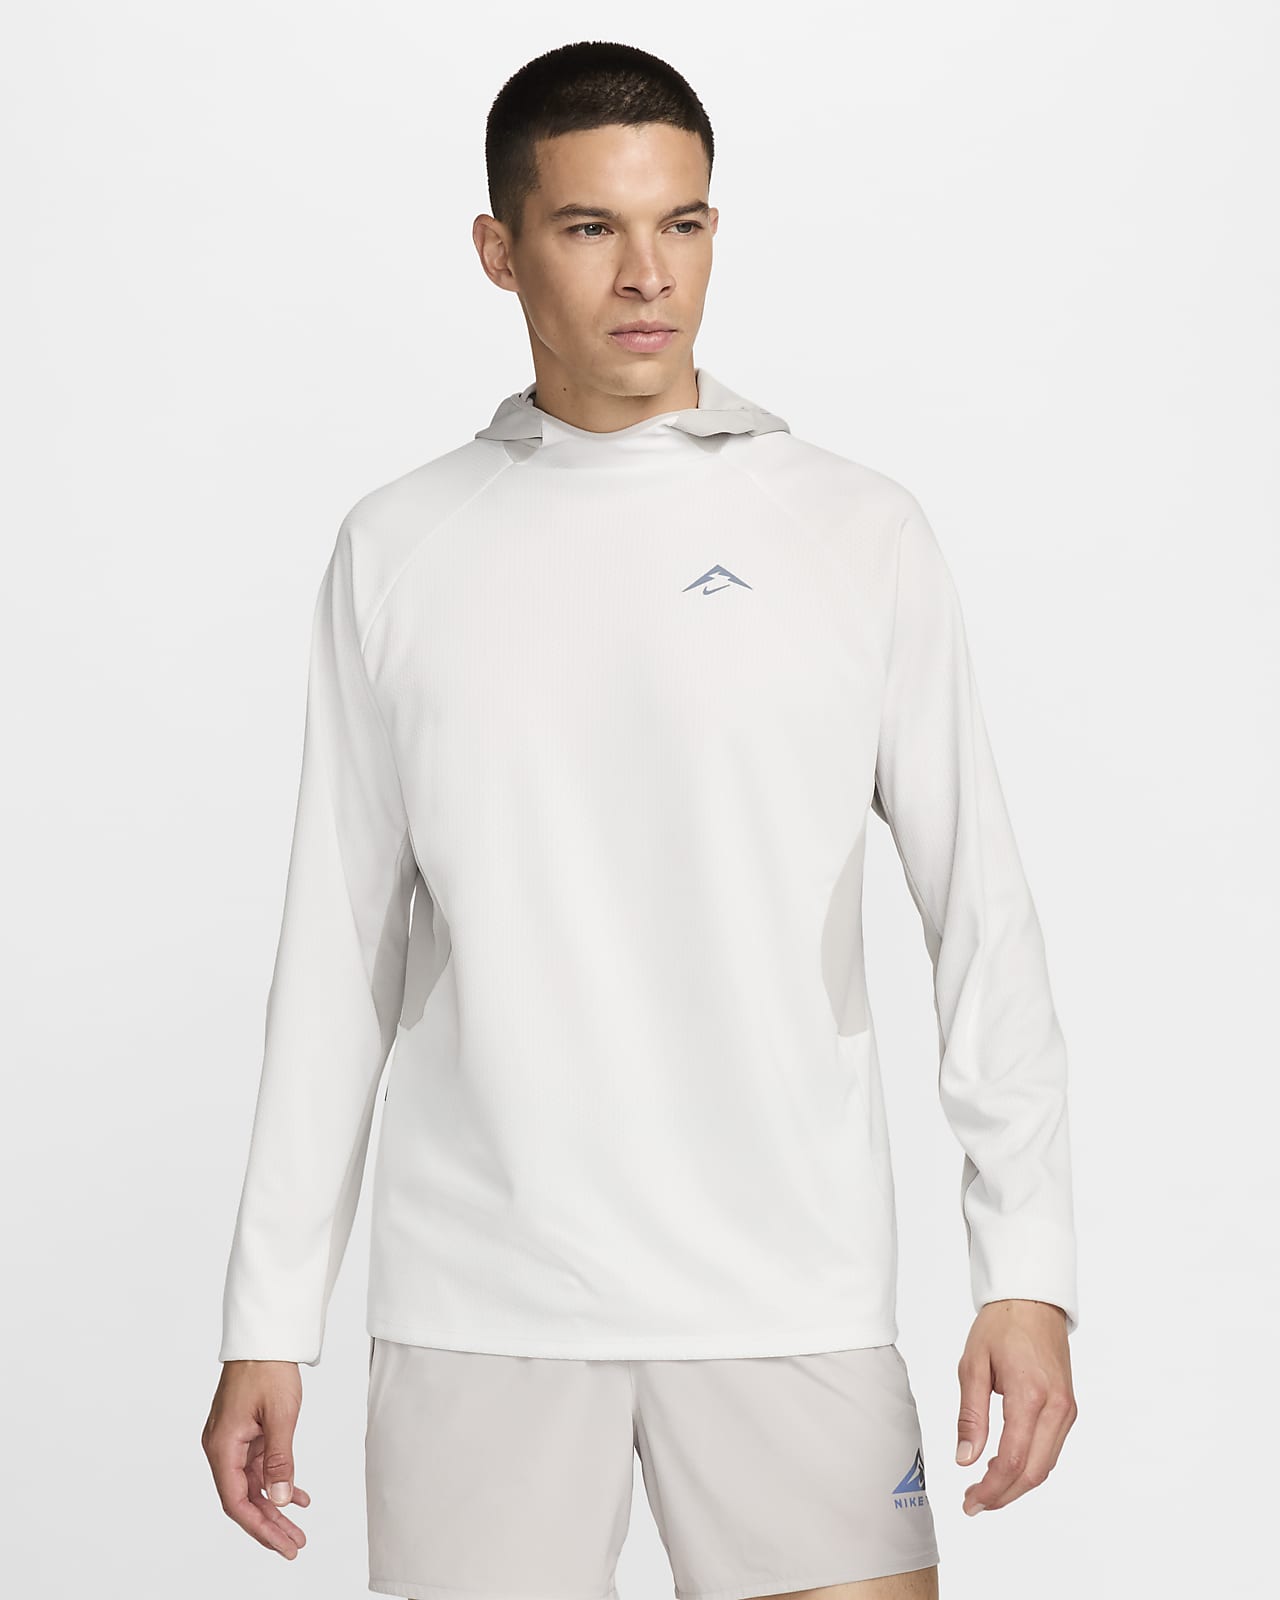 Ανδρική μακρυμάνικη μπλούζα με κουκούλα για τρέξιμο Dri-FIT UV Nike Trail